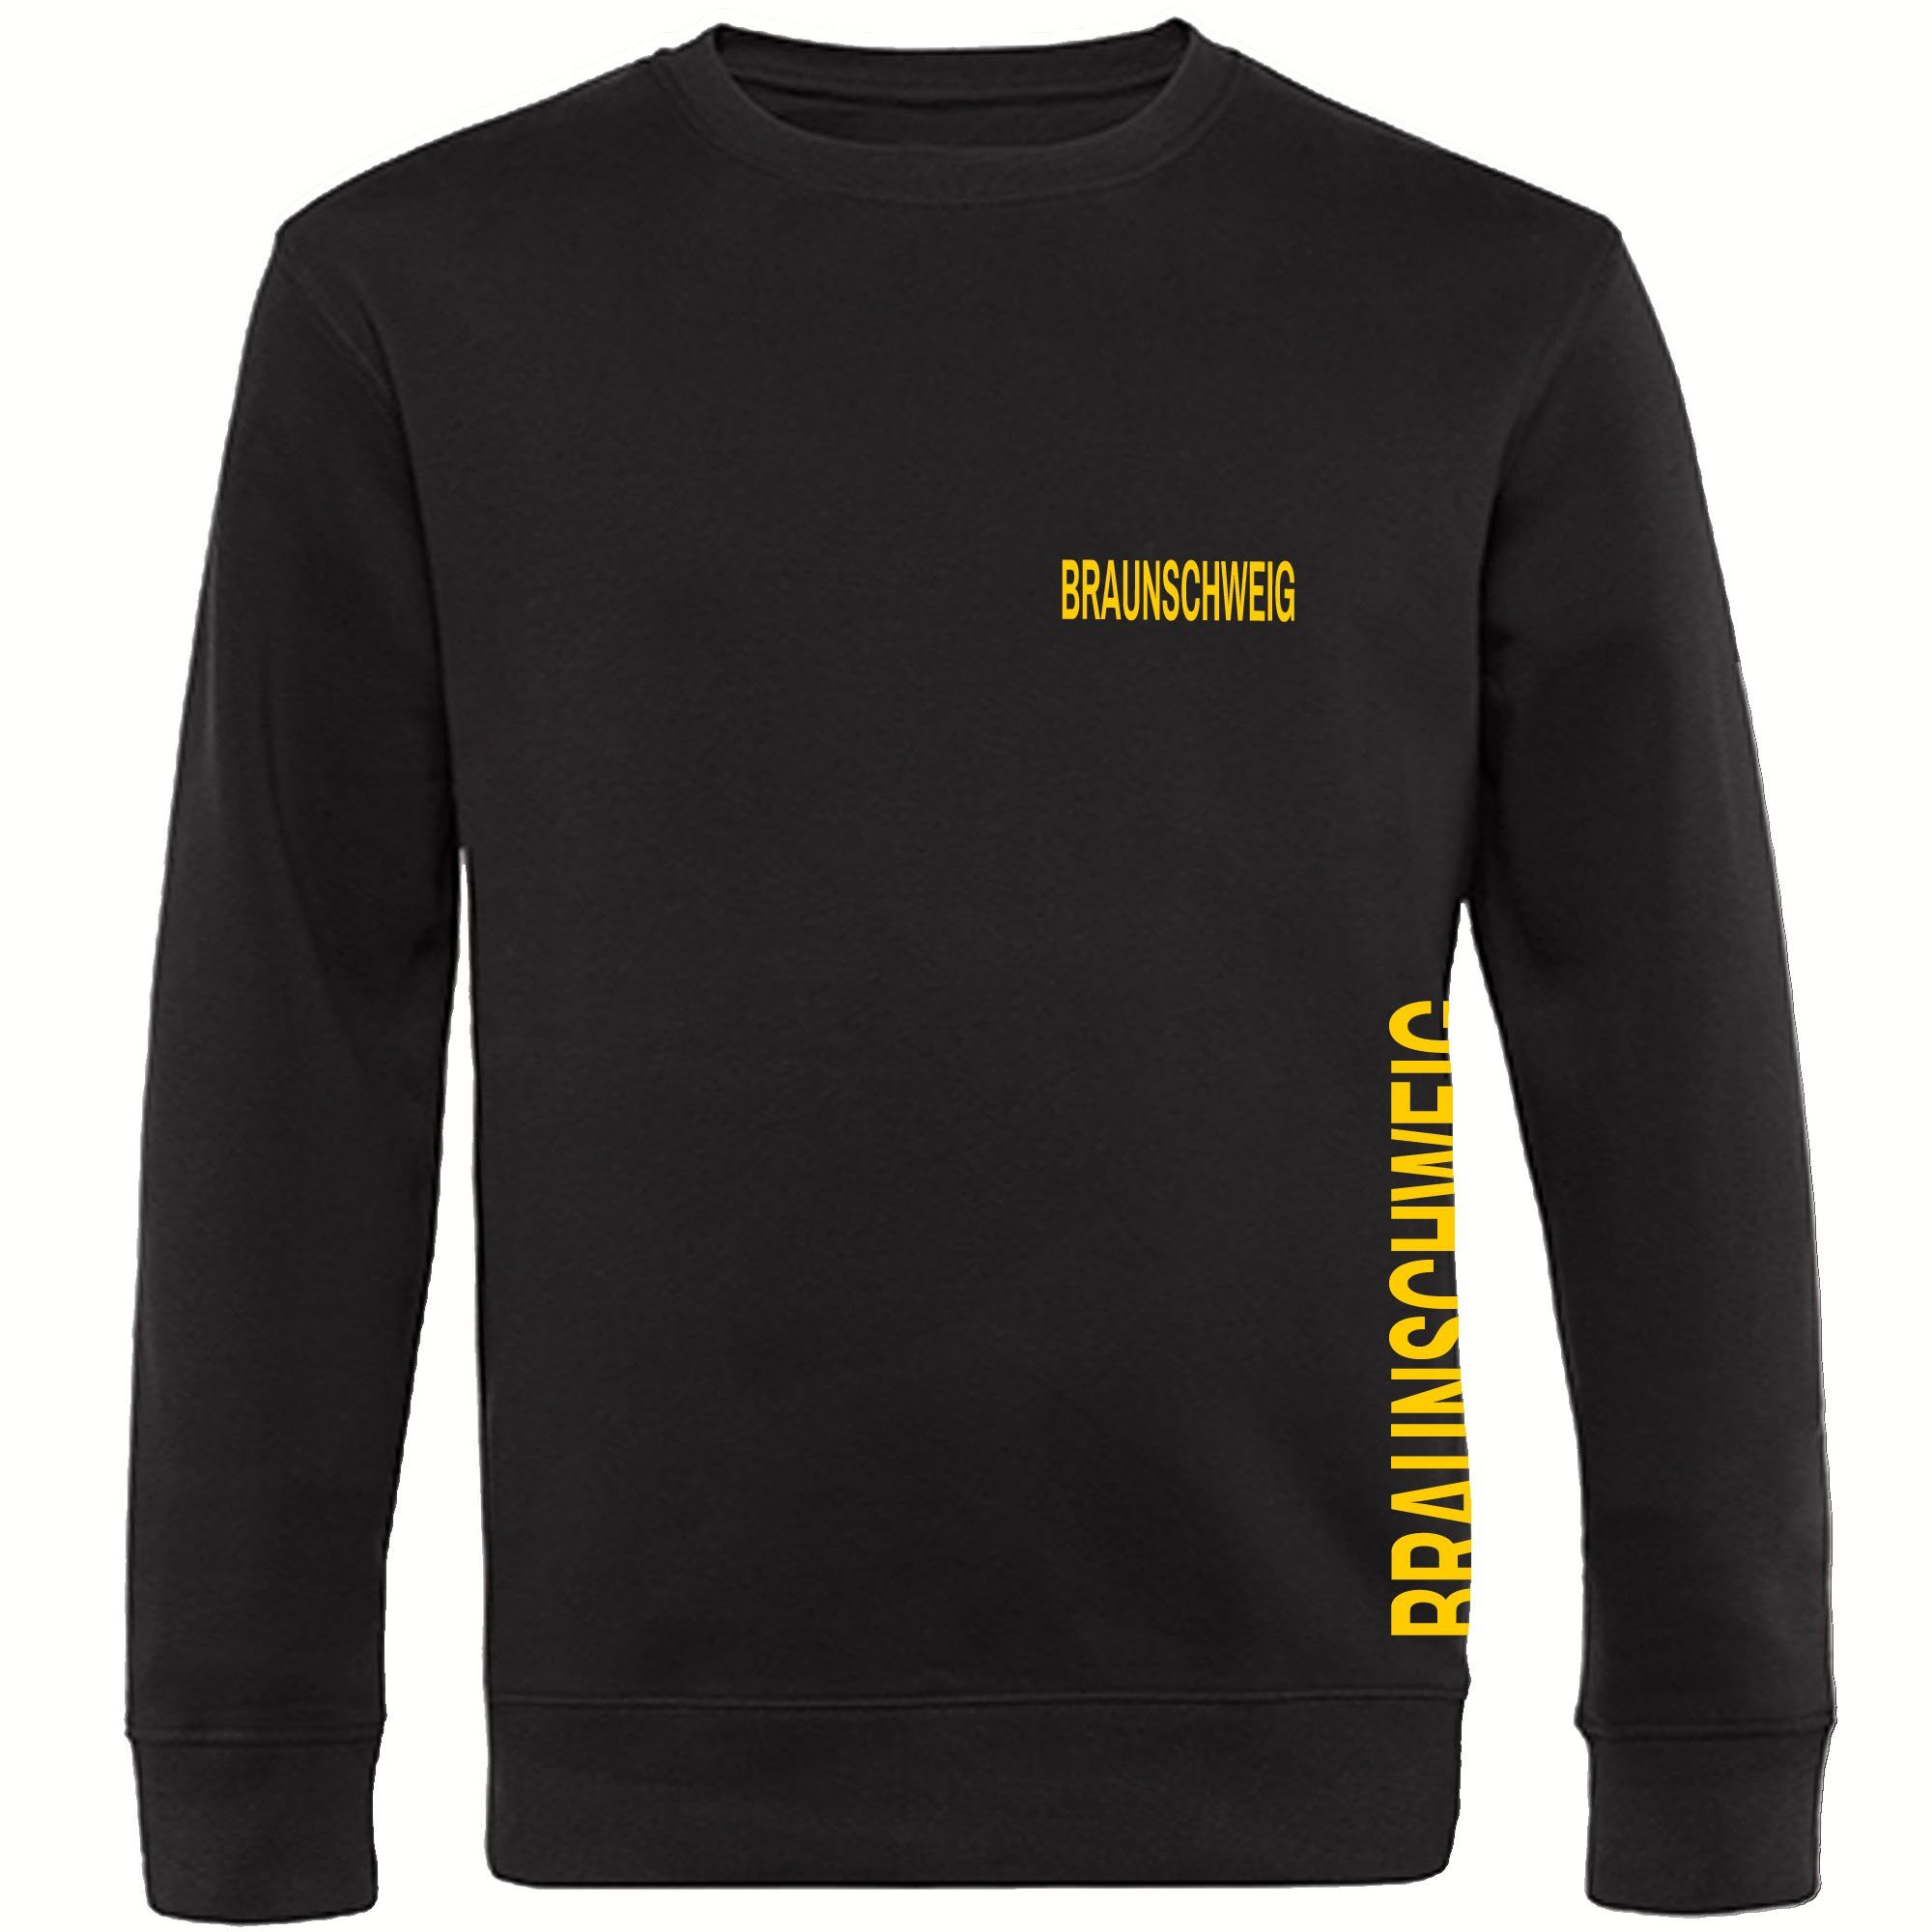 multifanshop Sweatshirt Braunschweig - Brust & Seite - Pullover